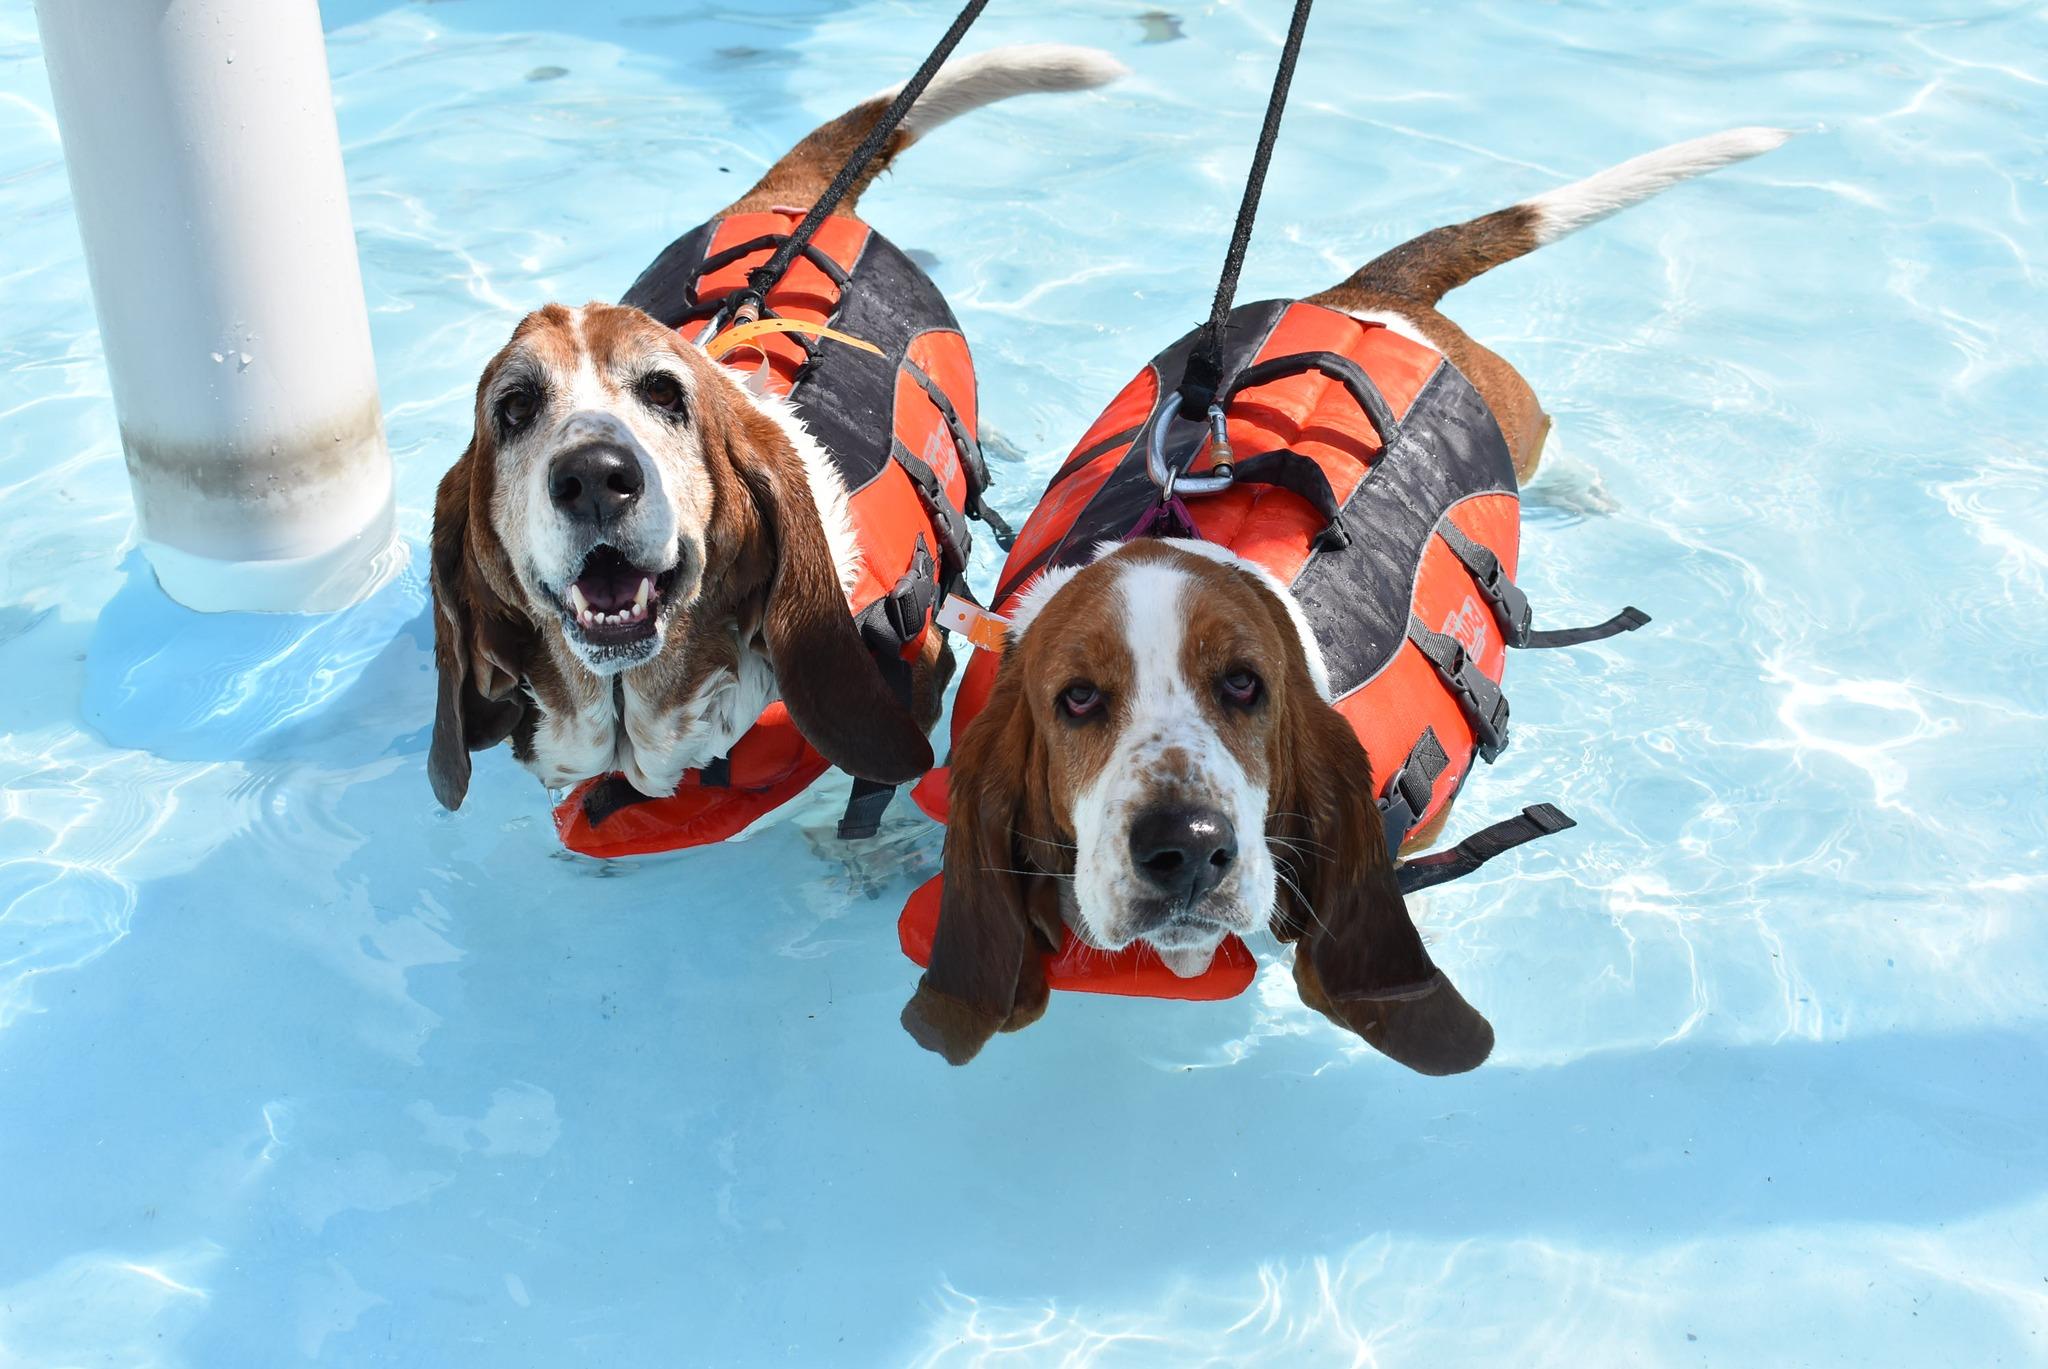 Doggie Dive at Knoebels Amusement Resort